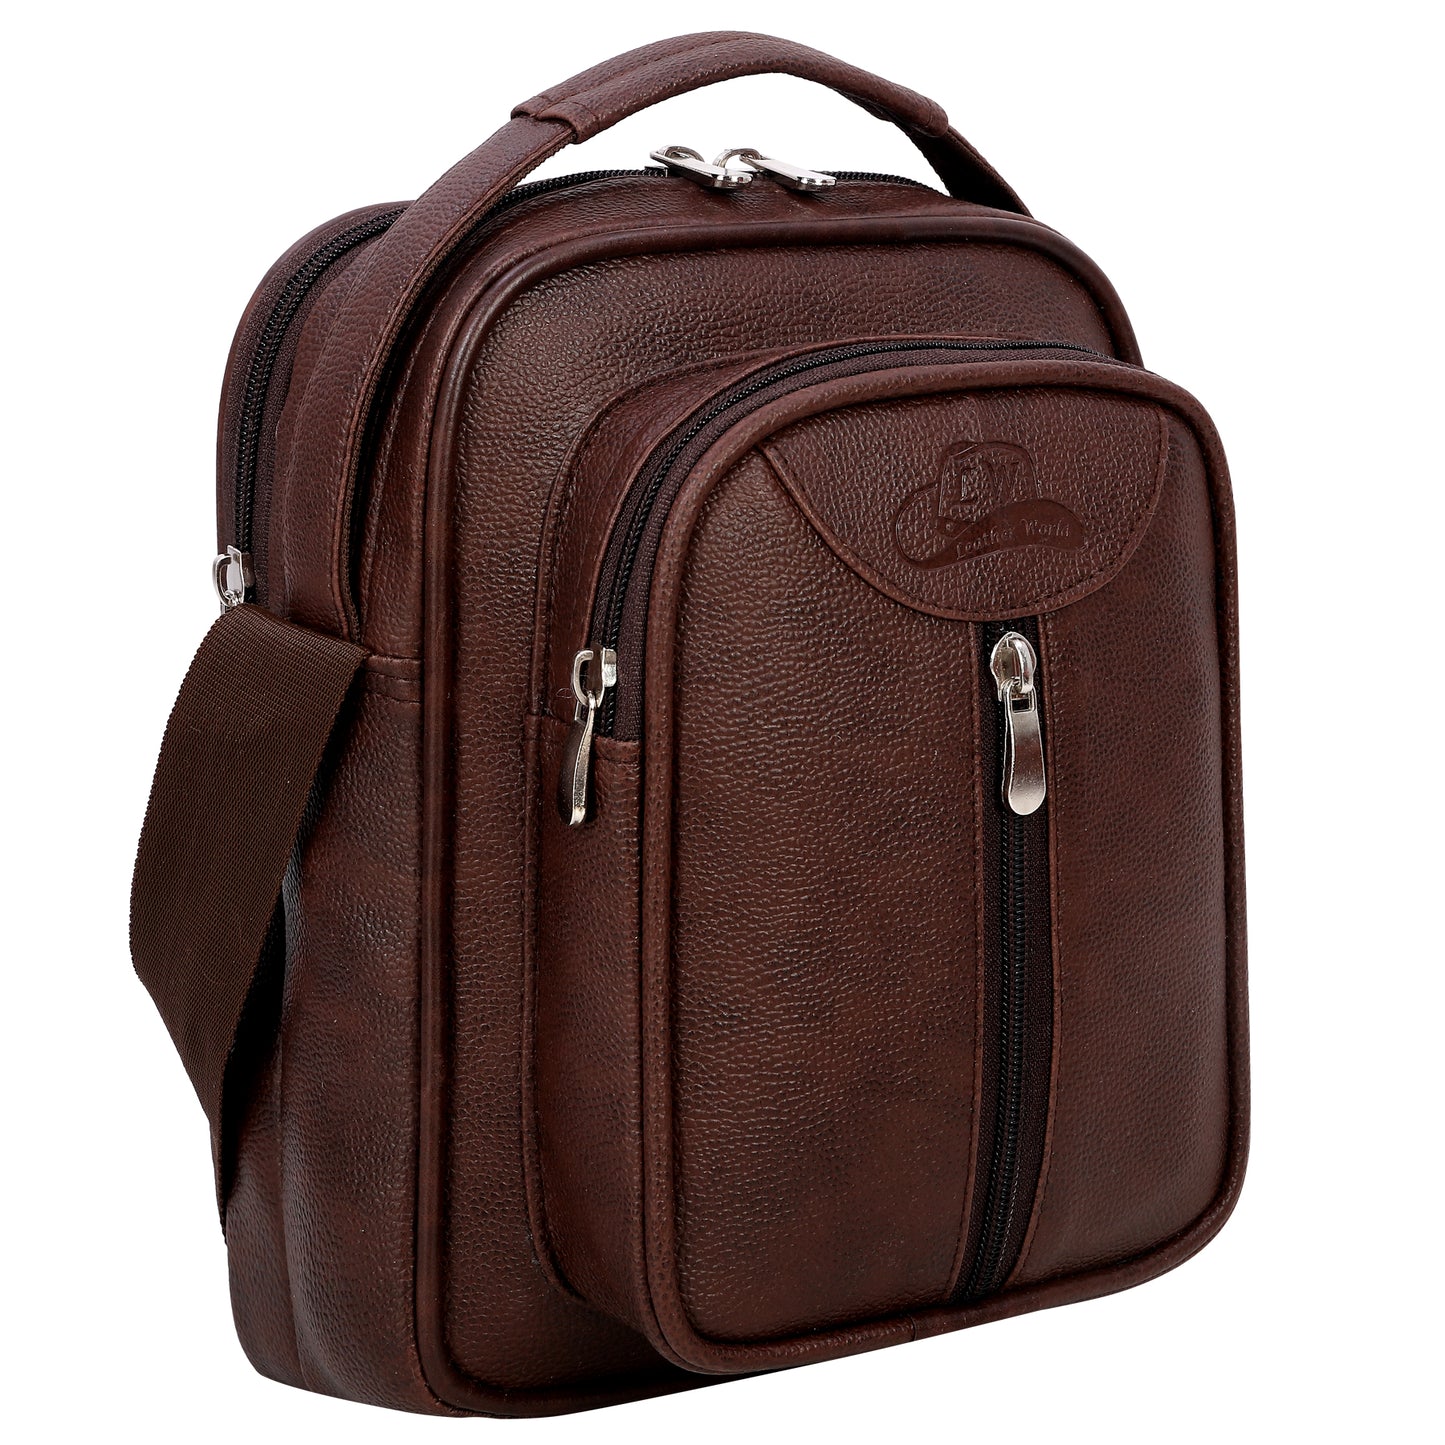 Leather World Vegan Leather 5.6 Liter Sling Cross Body Travel Office Business Messenger Bag for Men Women - Brown